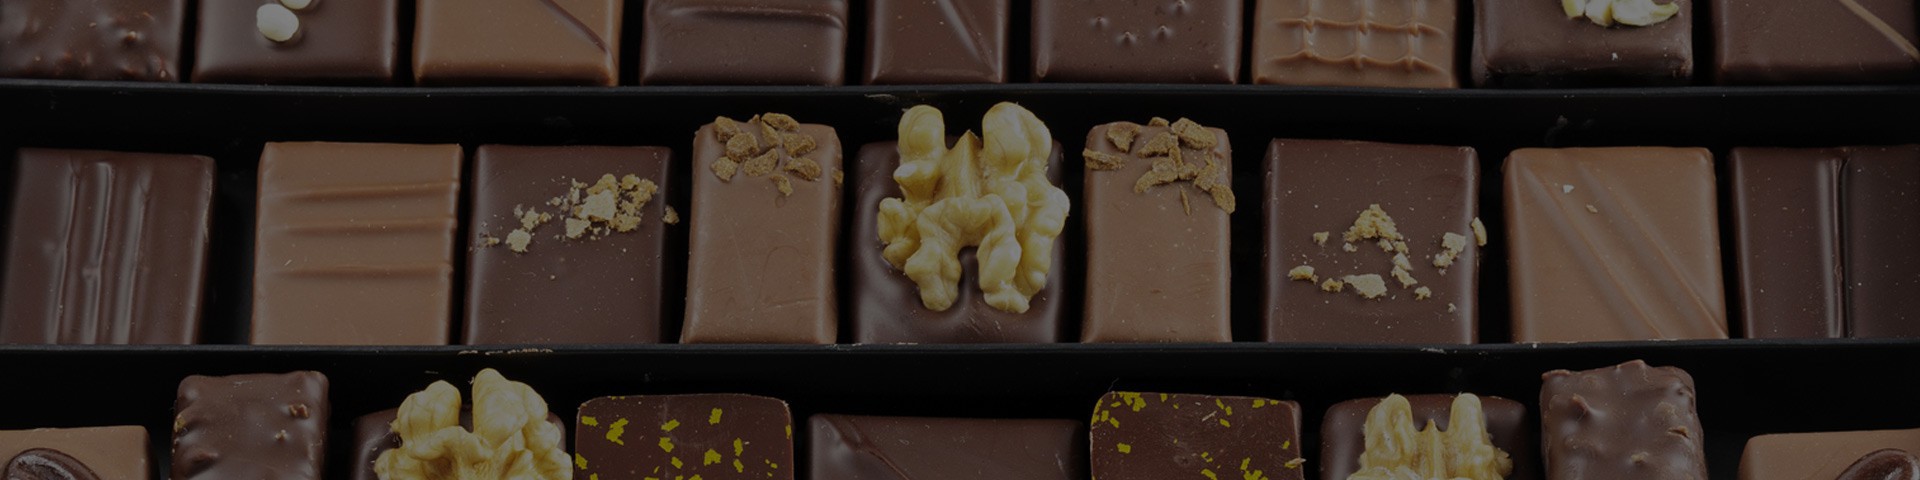 Chocolats maison | Chocolaterie Morand - la Clusaz